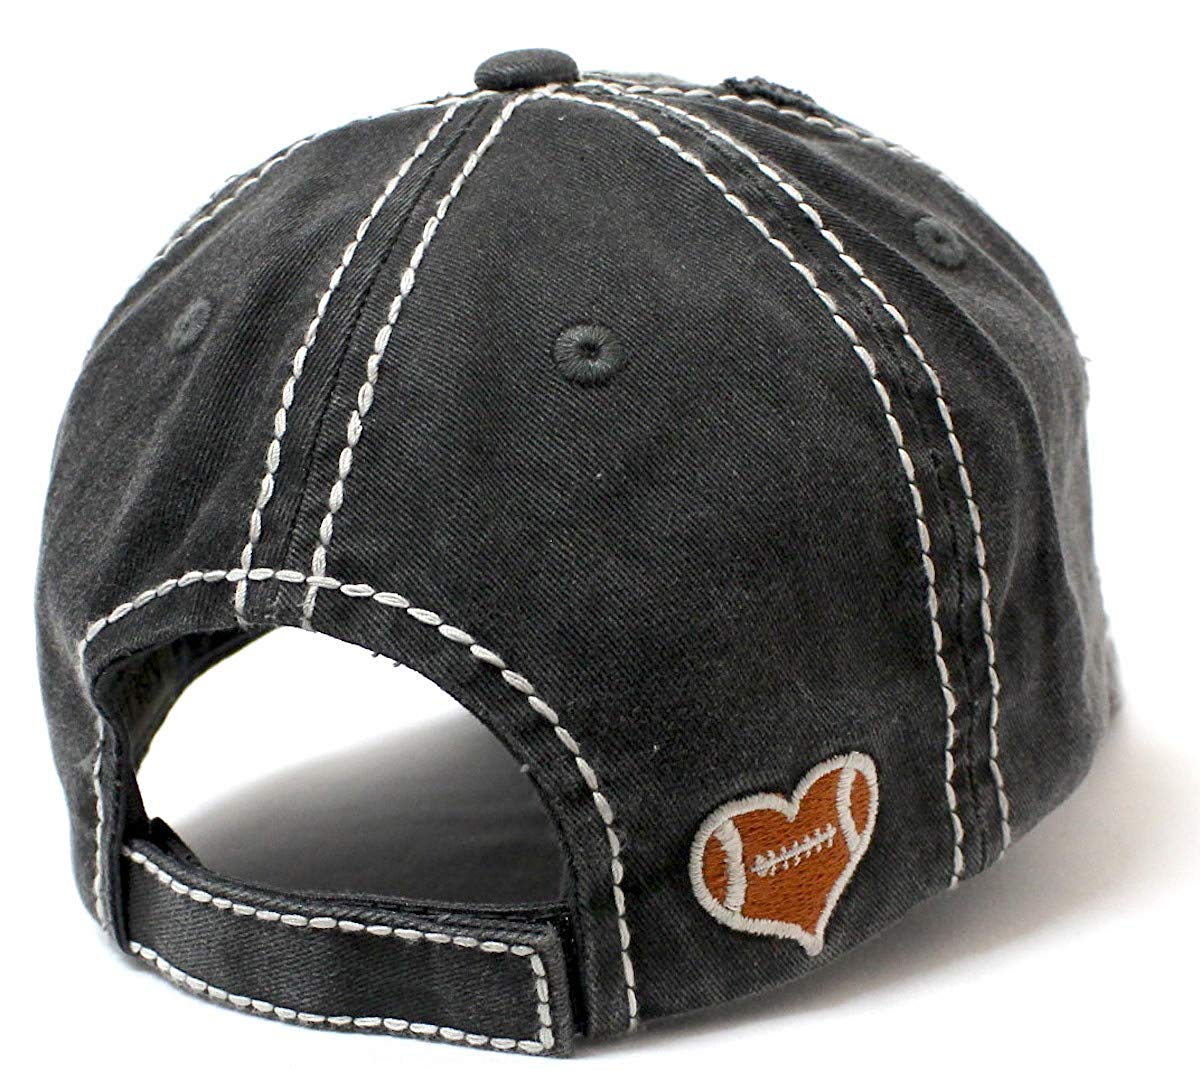 CAPS 'N VINTAGE Charcoal Gray Football Mama Cheer Queen Hat - Caps 'N Vintage 